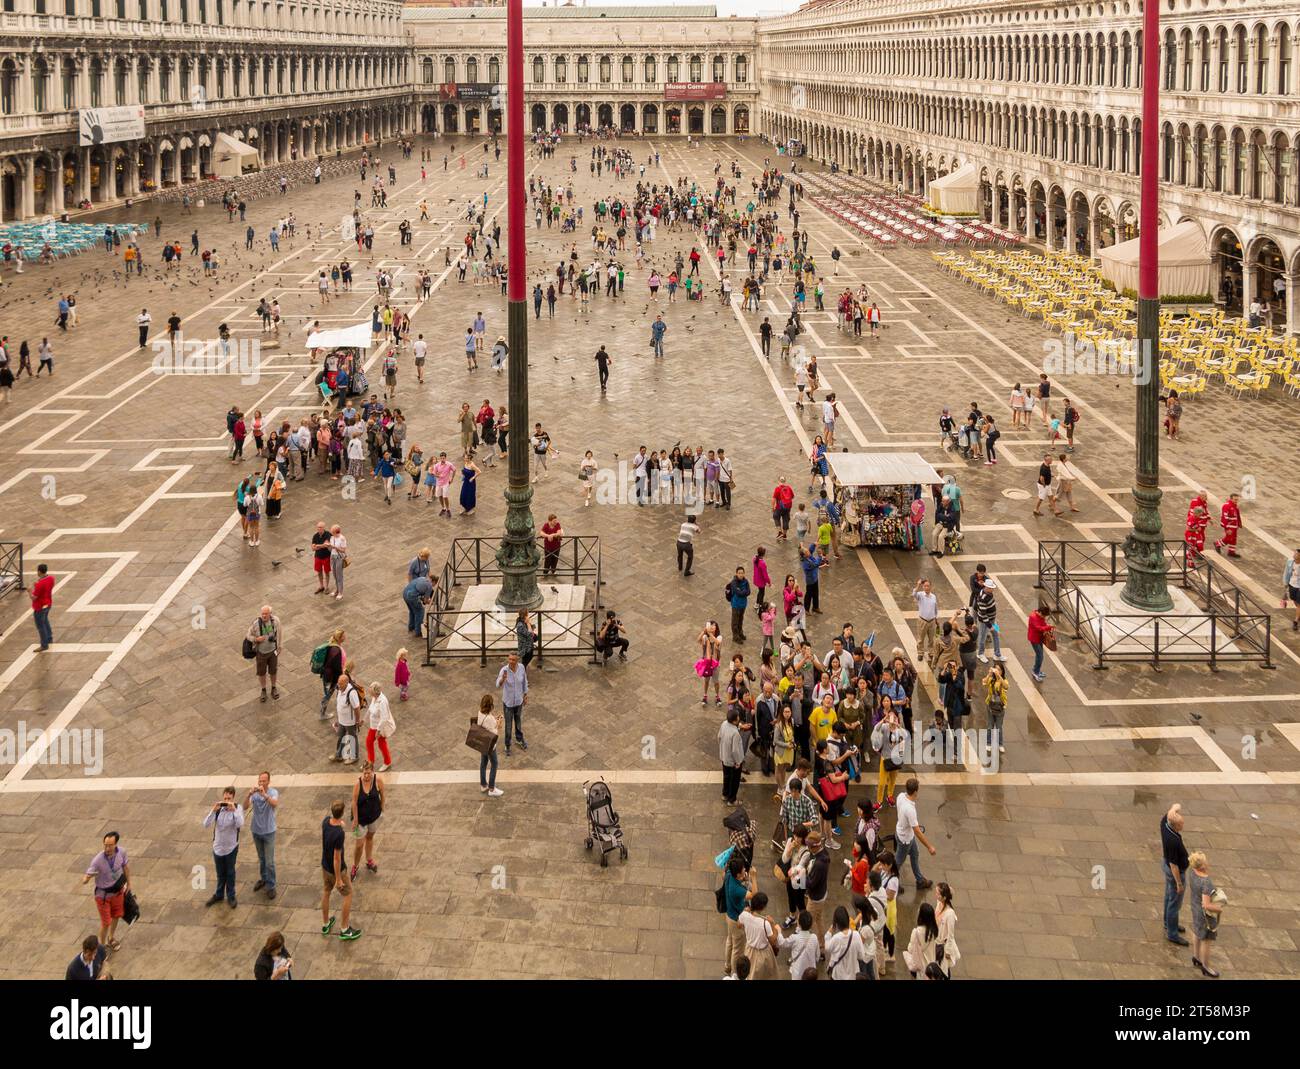 Vista de St. Plaza de Marcos en Venecia, Italia desde el balcón de la basílica. Una multitud de turistas está presente en la plaza. Foto de stock